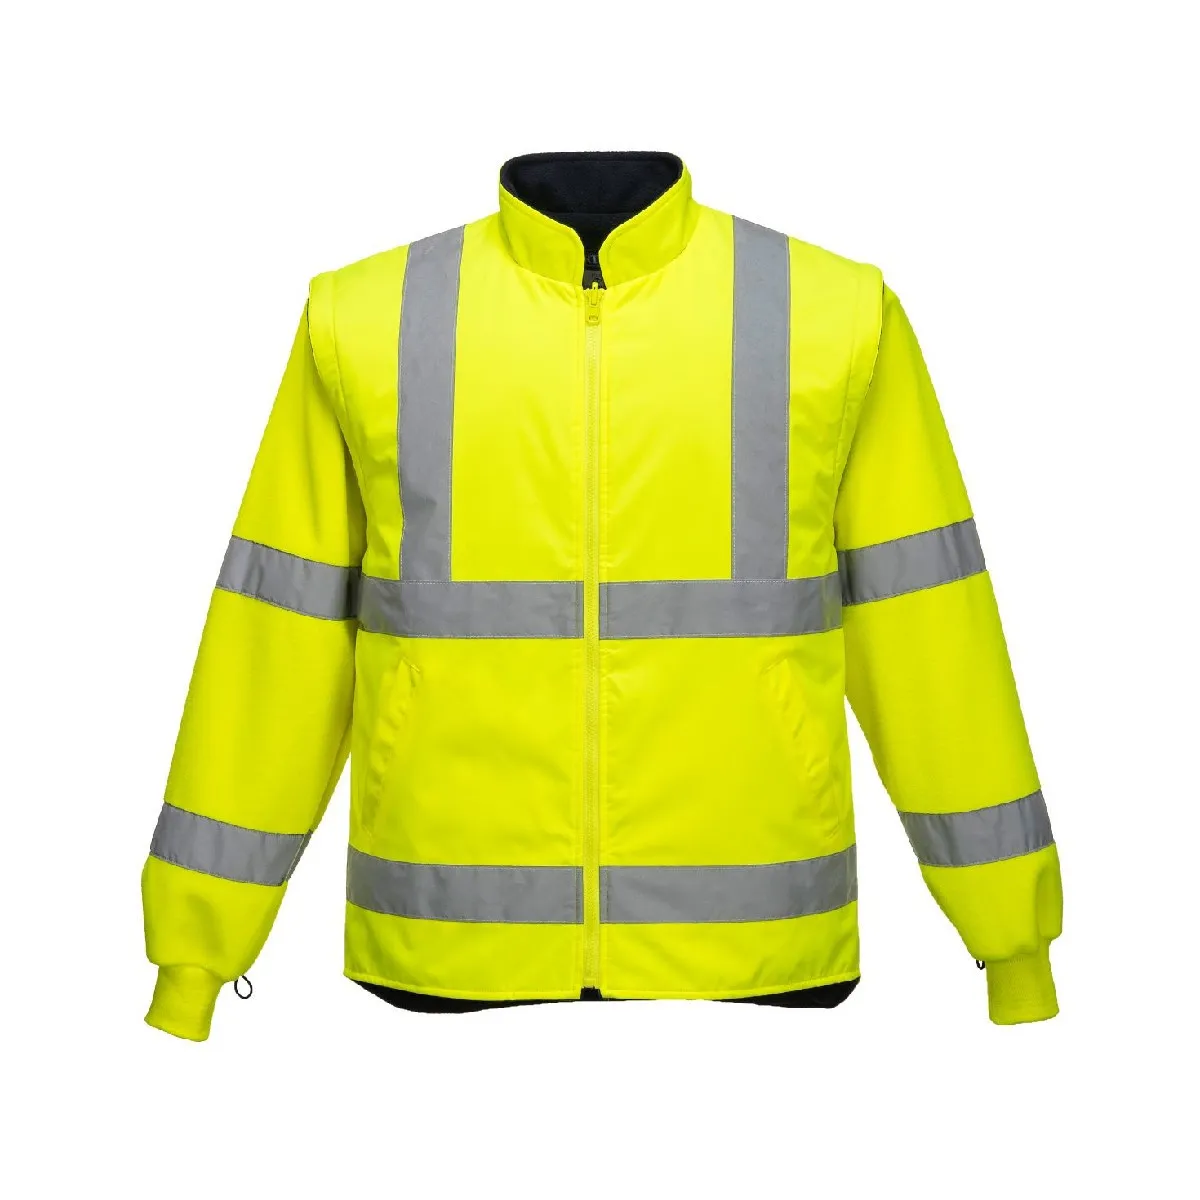 Visokovidljiva jakna S766 5 u 1 žuta - Portwest 